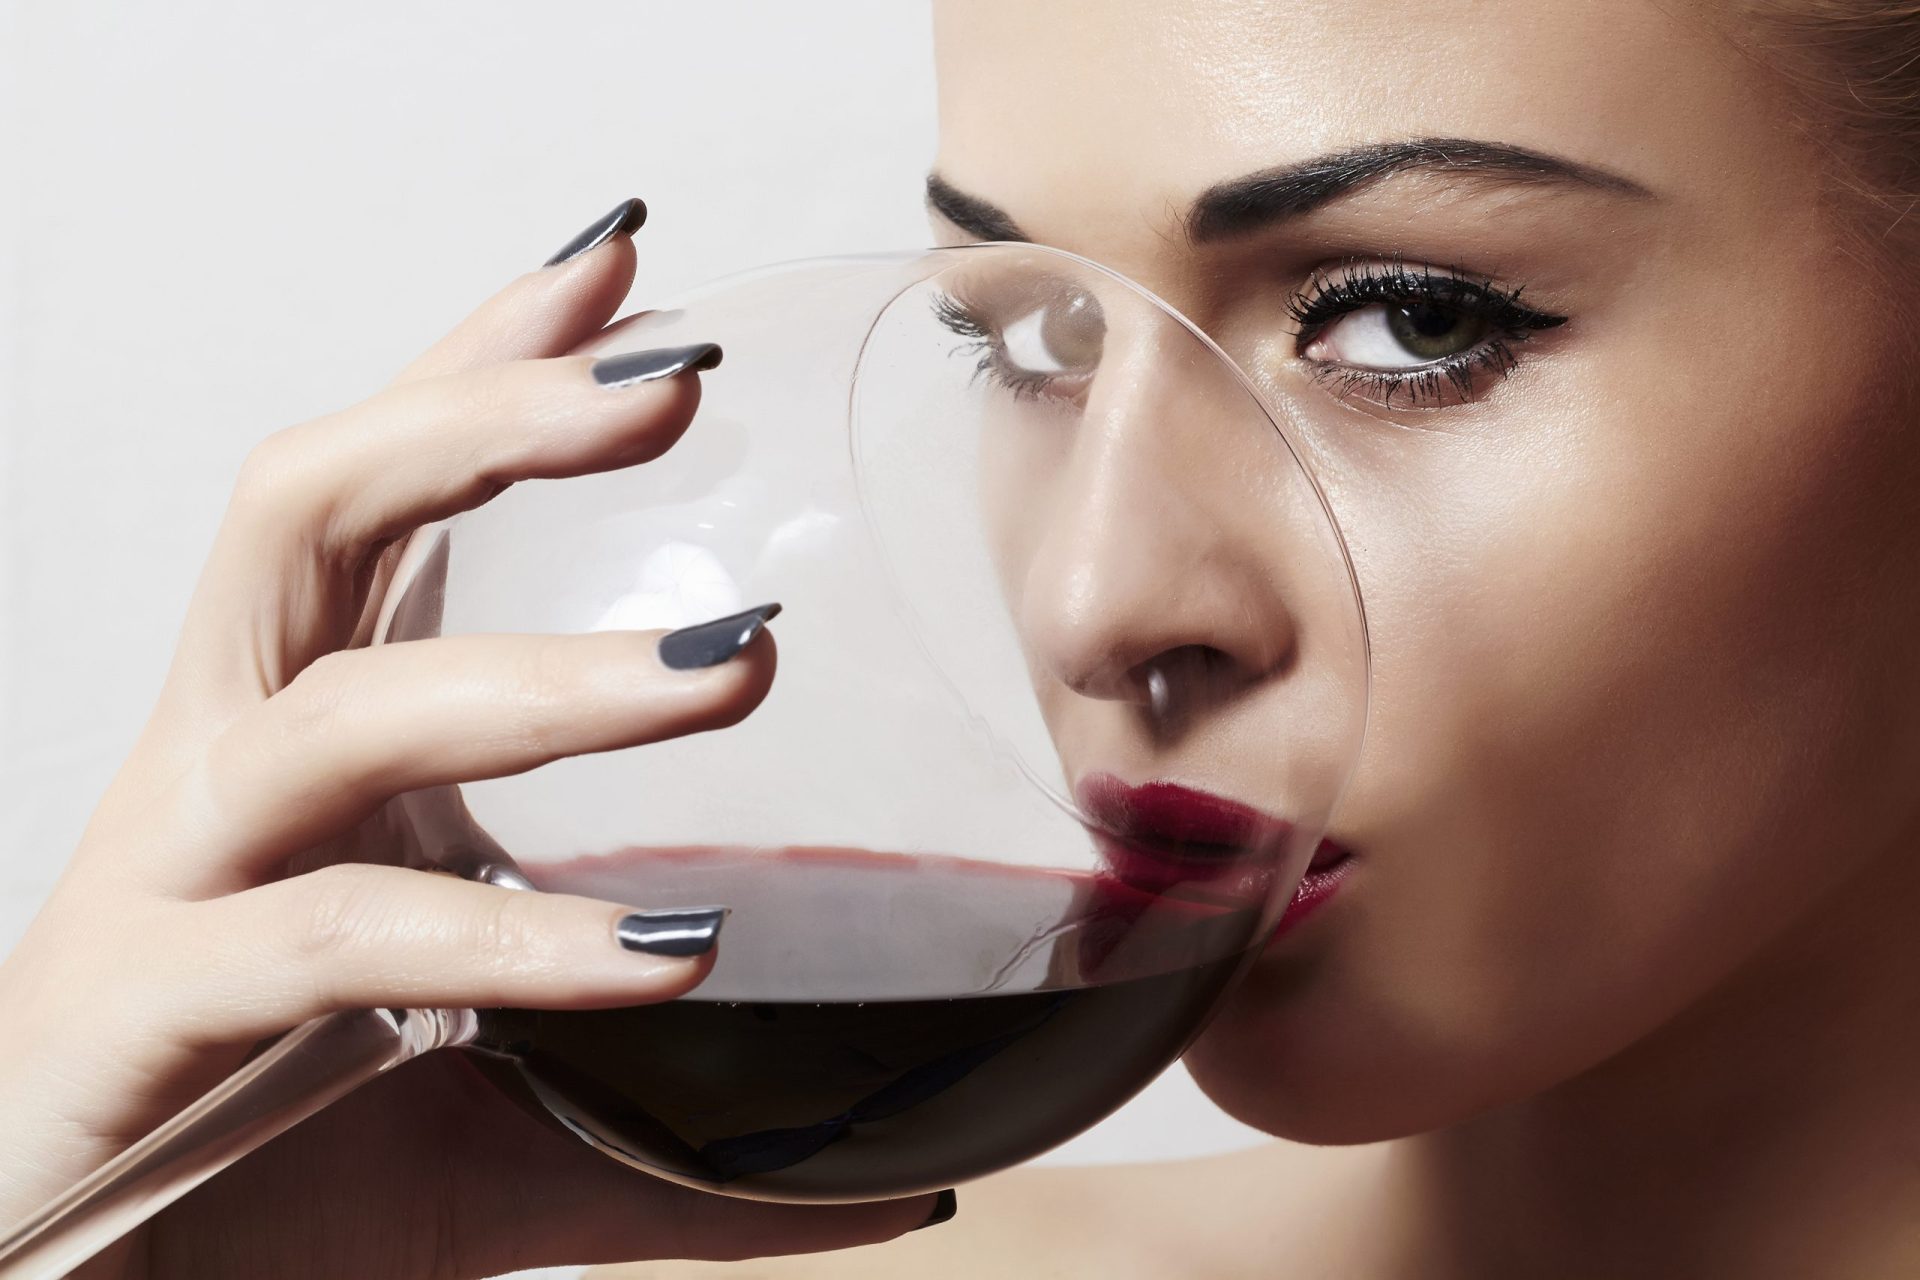 Sabe quantos copos deve beber para parecer mais atraente?